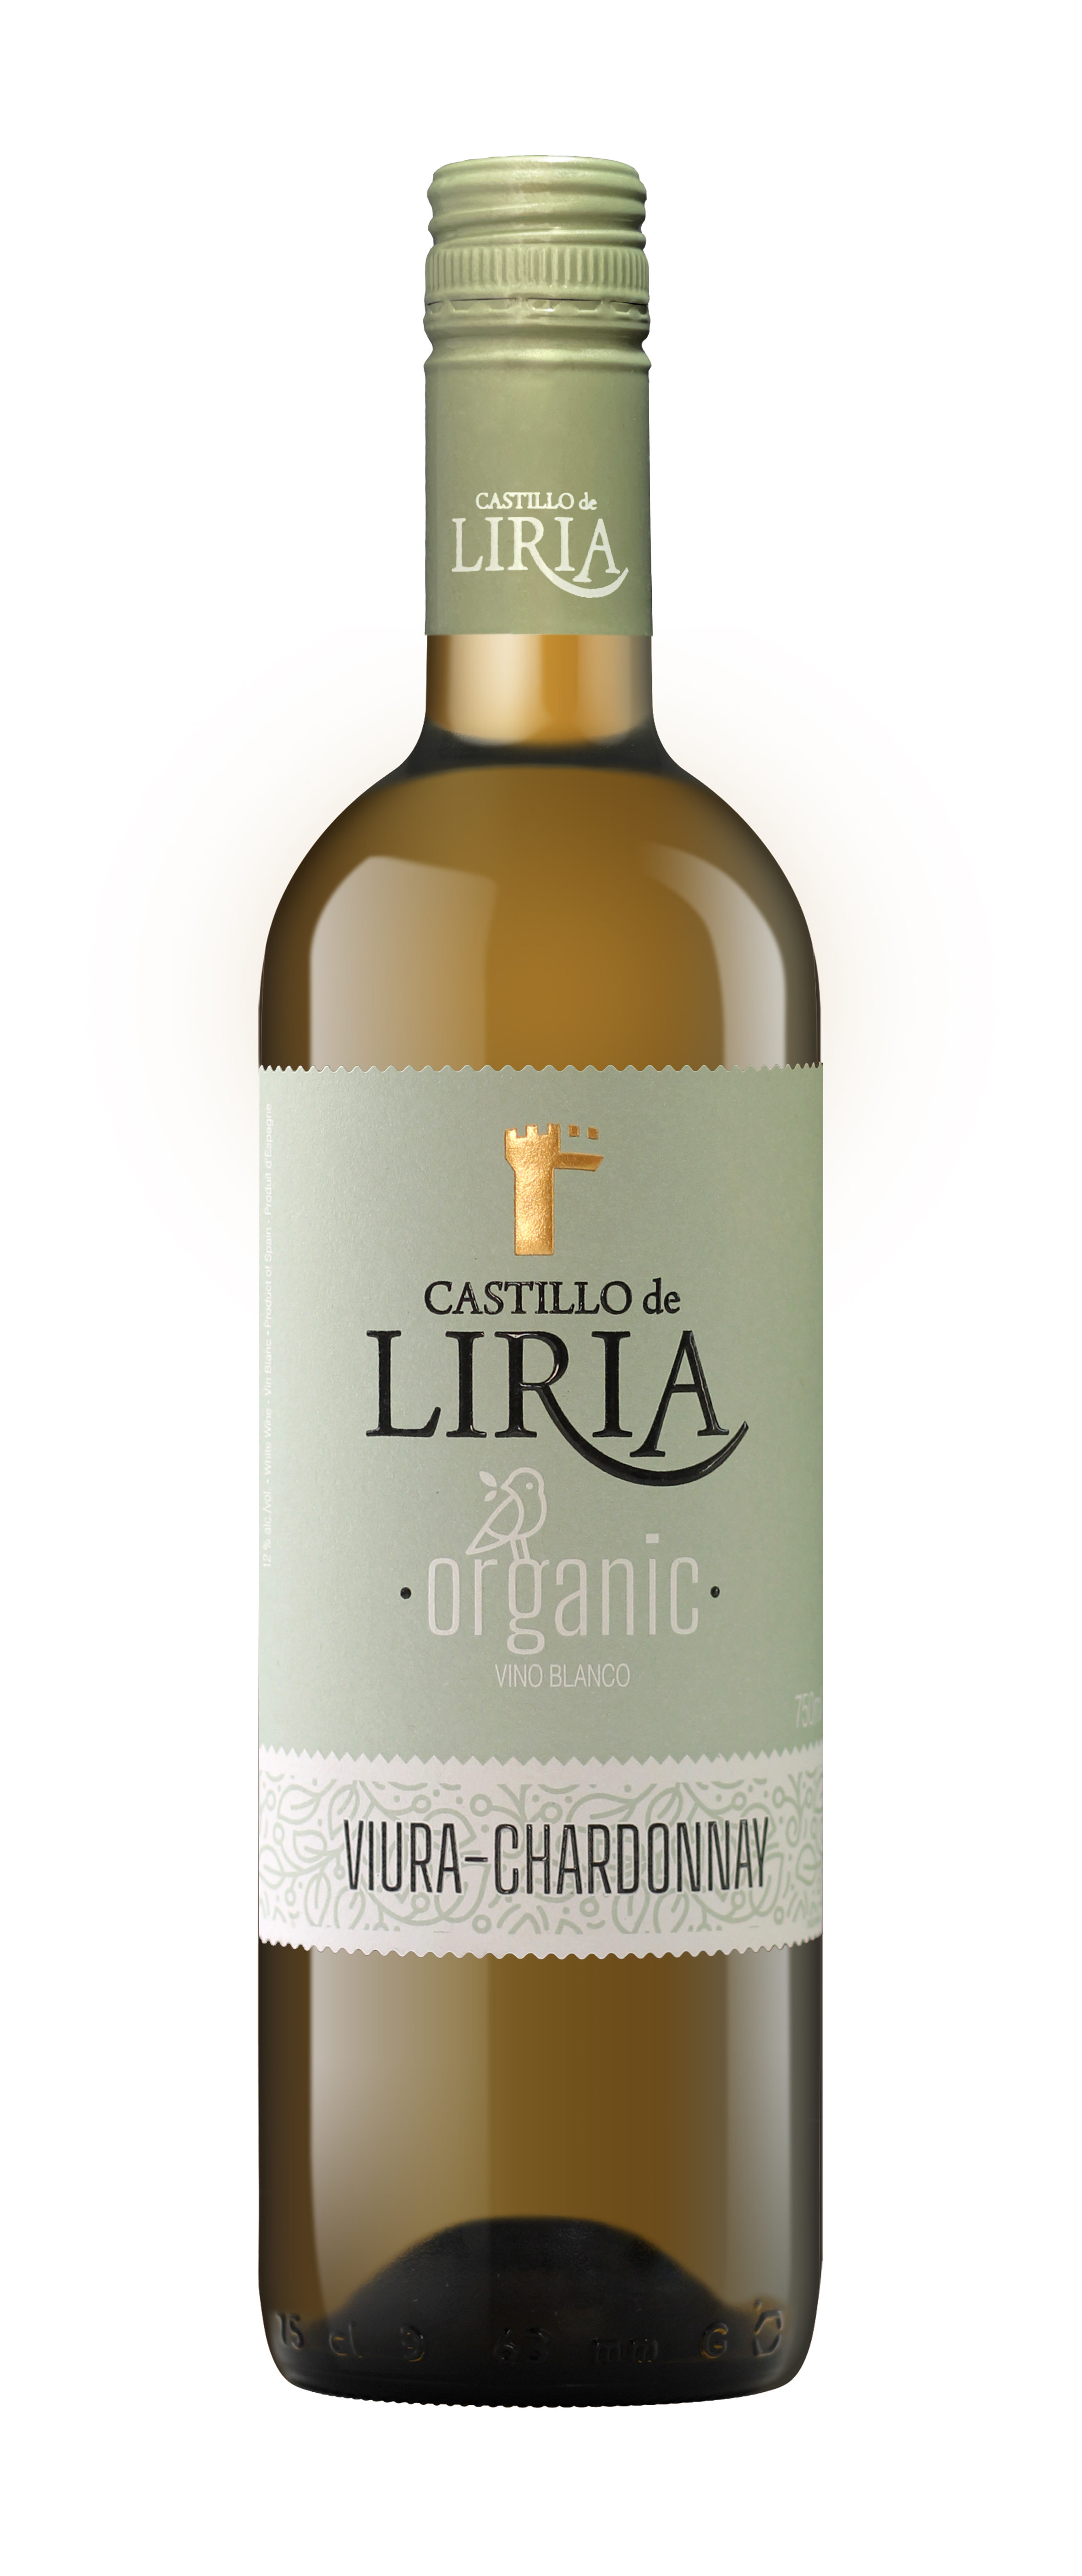 CASTILLO de LIRIA Organic White